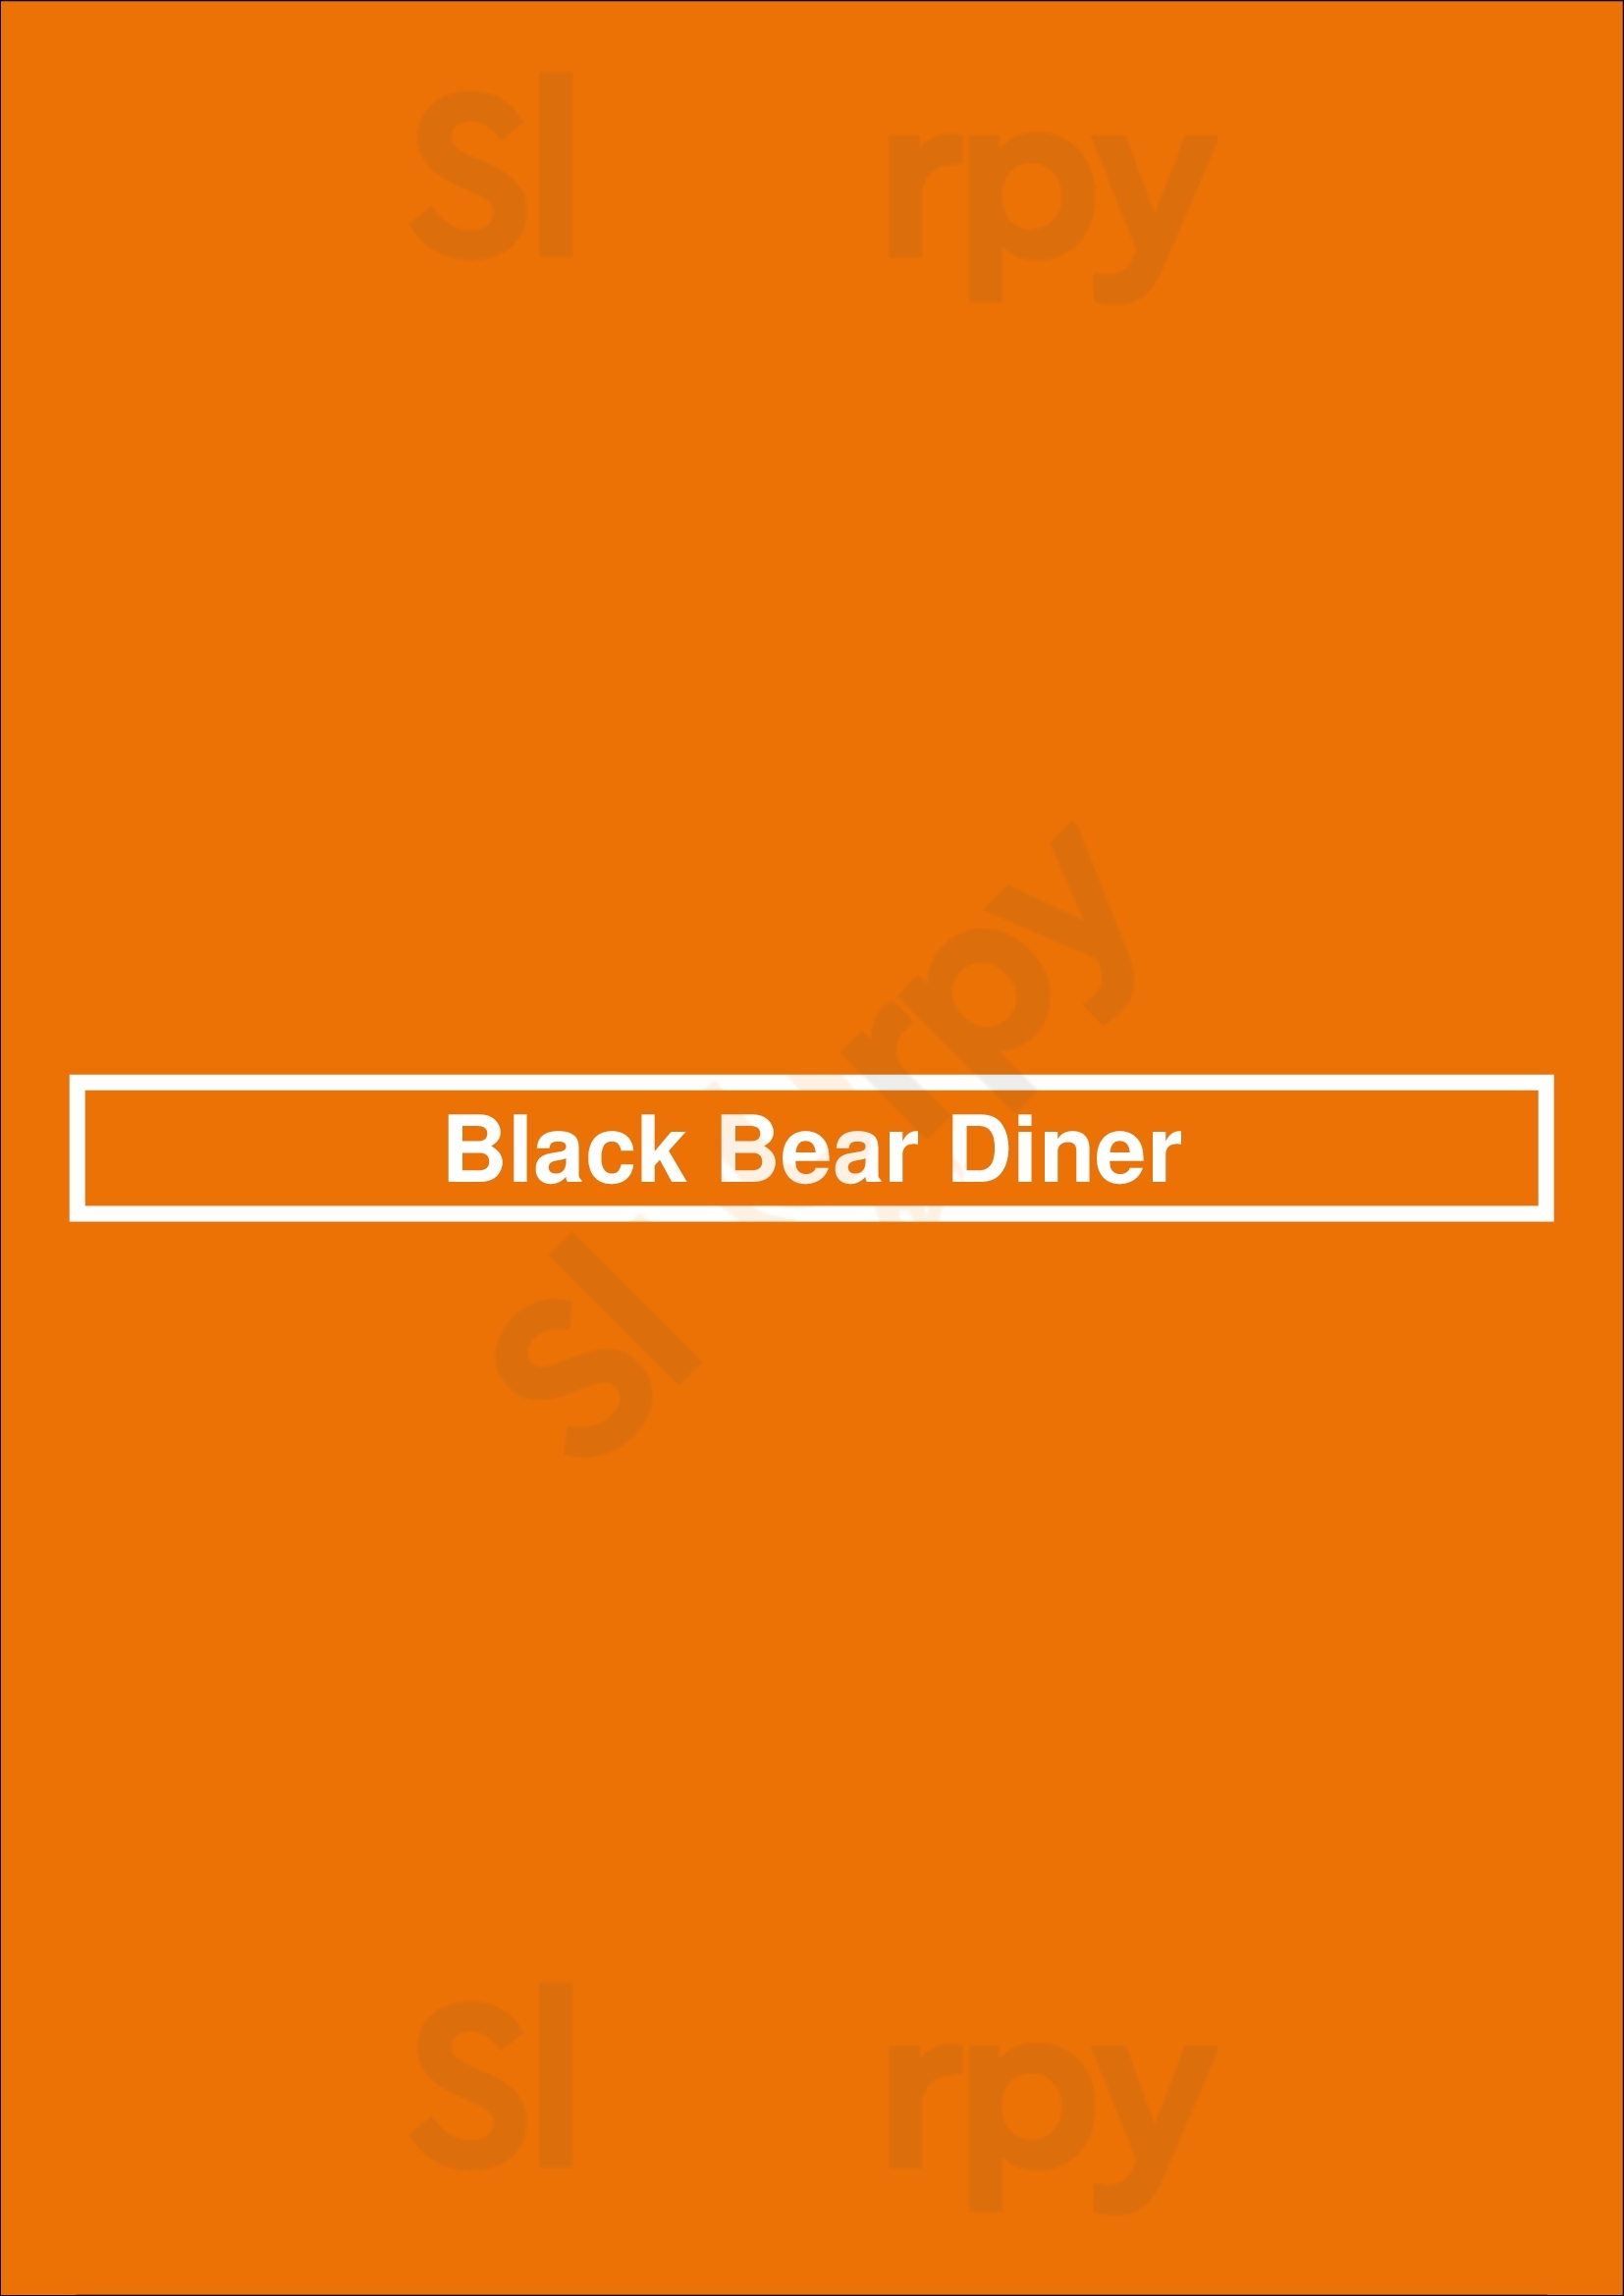 Black Bear Diner Lakewood Menu - 1